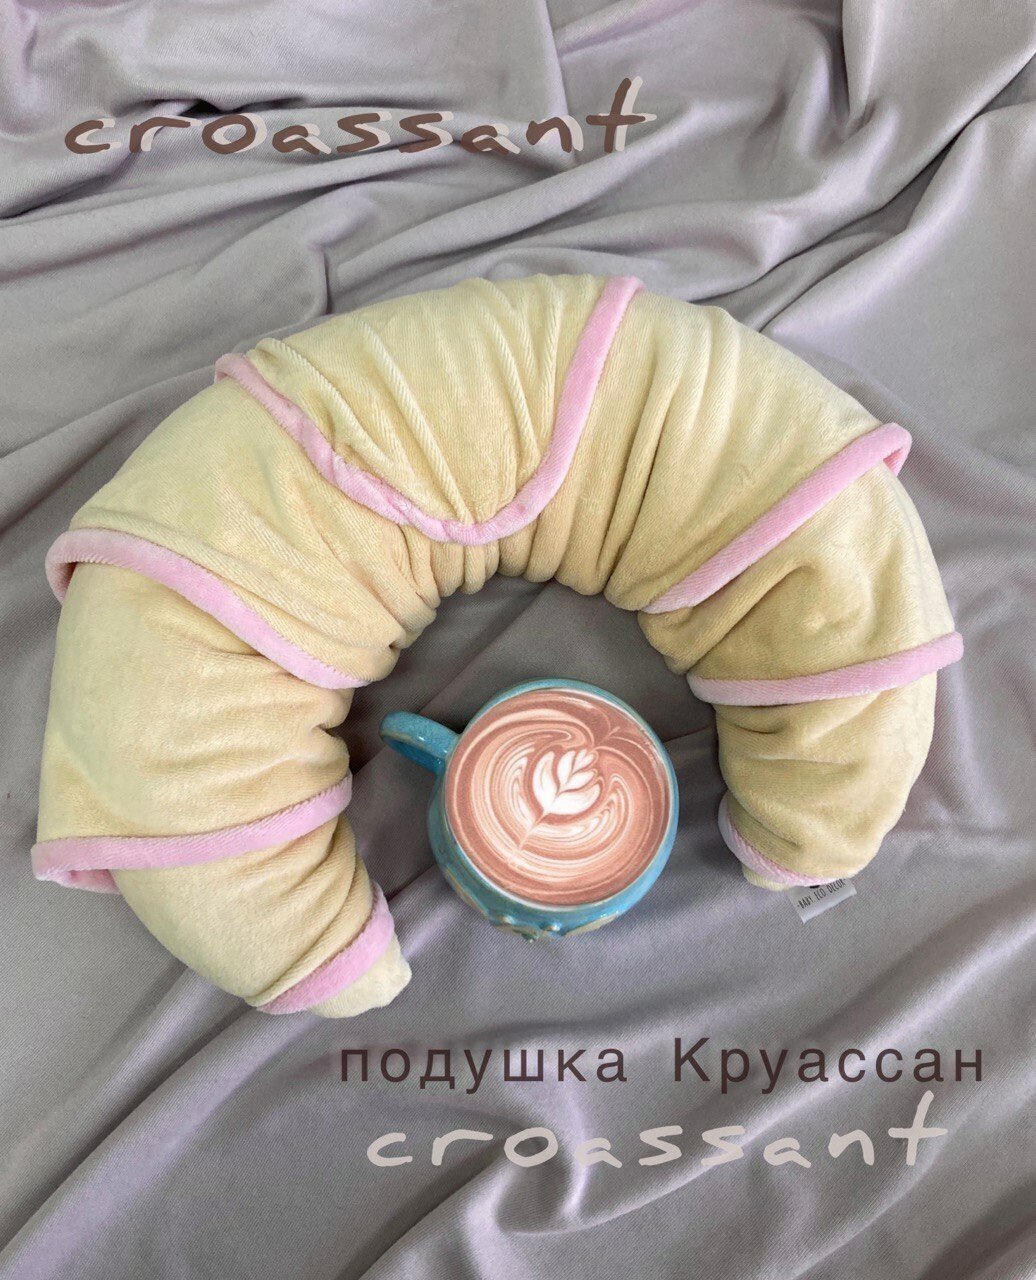 Декоративная подушка Baby.Eco.Decor Круассан с розе кремом / Подушка дорожная на шею, для путешествий